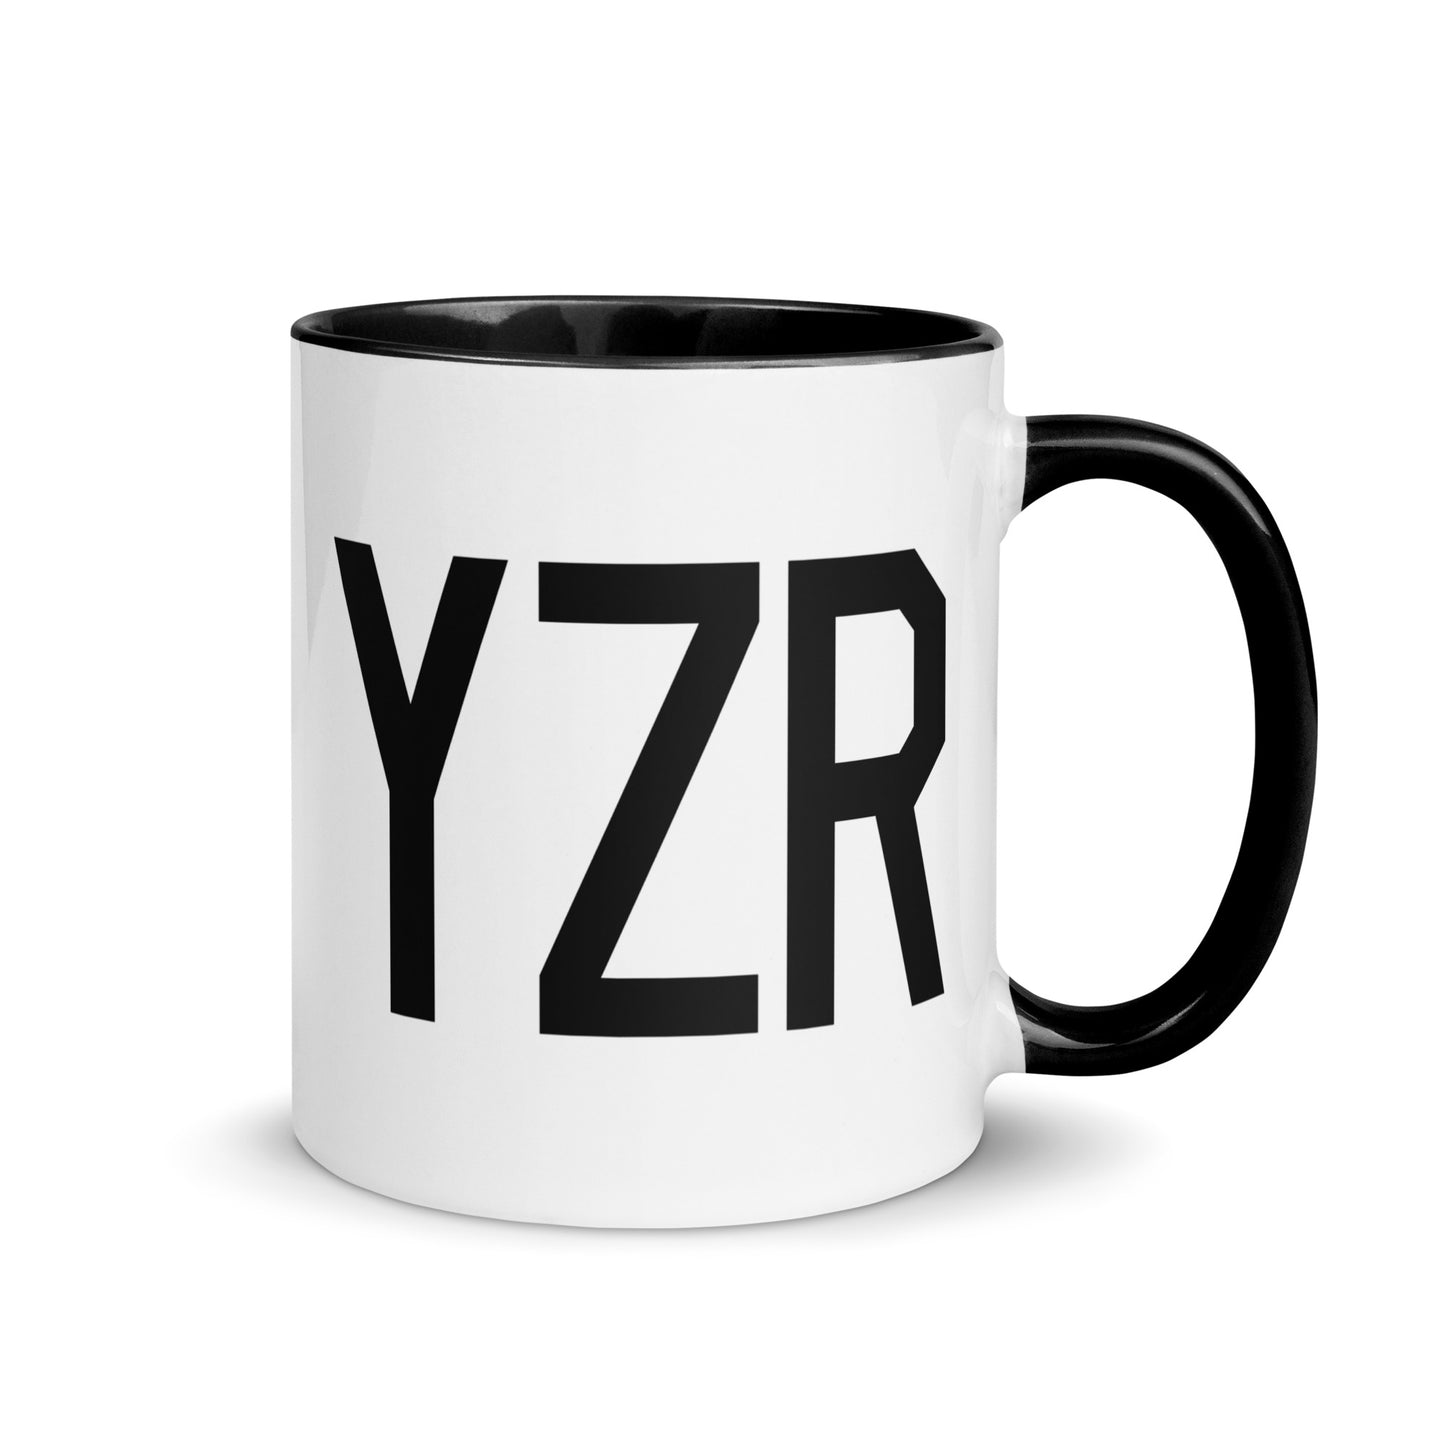 Airport Code Coffee Mug - Black • YZR Sarnia • YHM Designs - Image 01